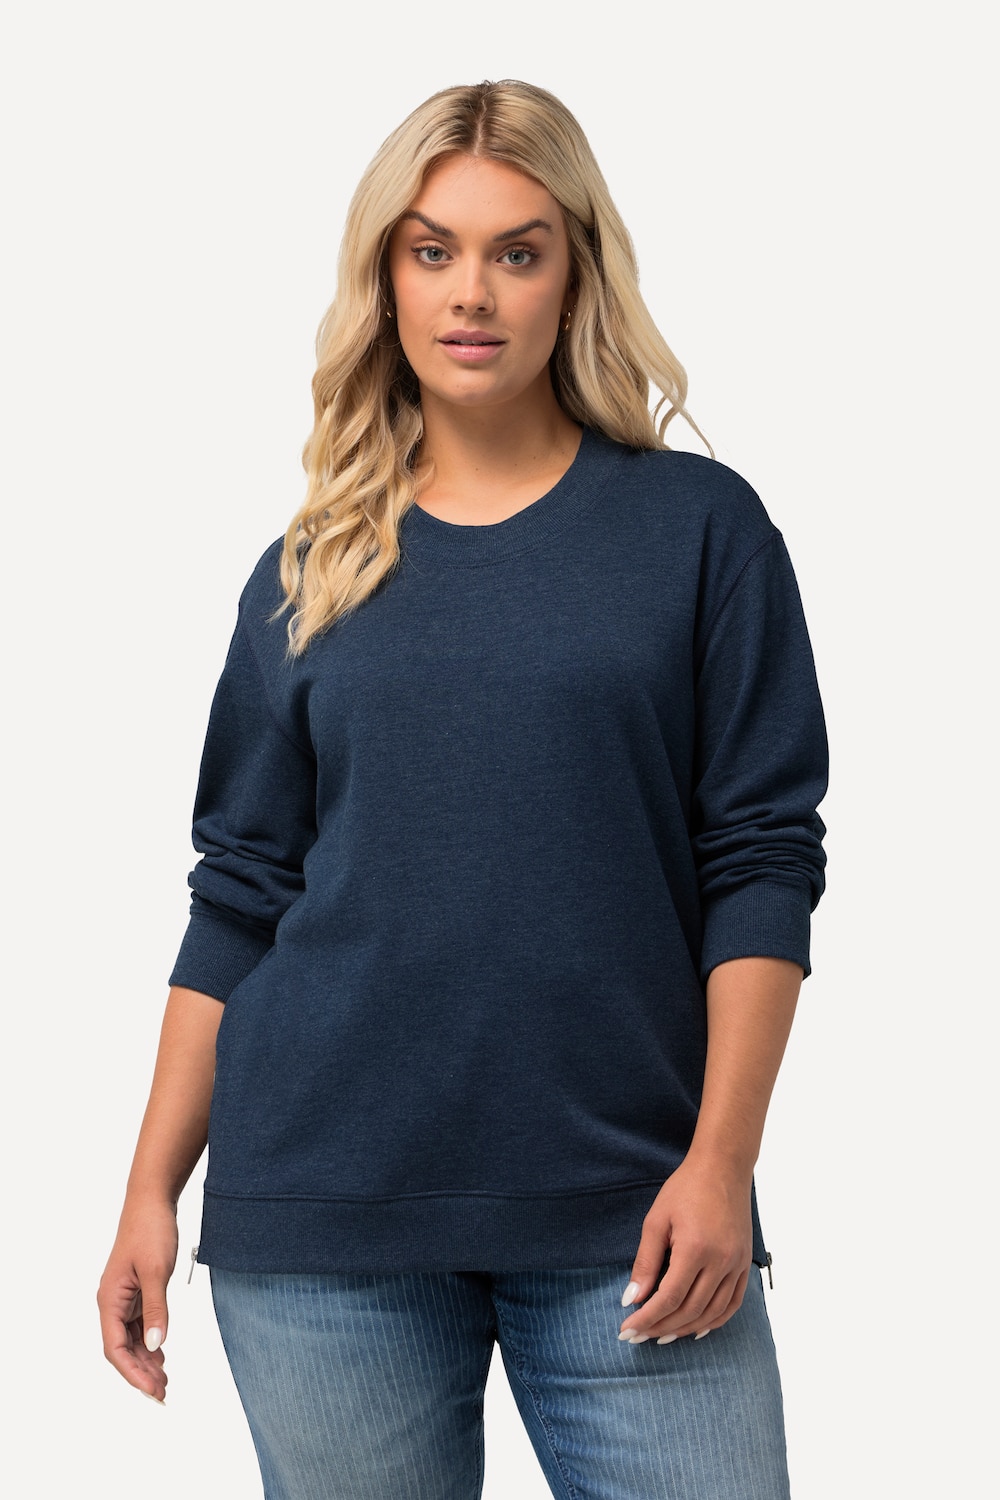 Grote Maten Sweatshirt, Dames, blauw, Maat: 54/56, Katoen/Polyester, Ulla Popken